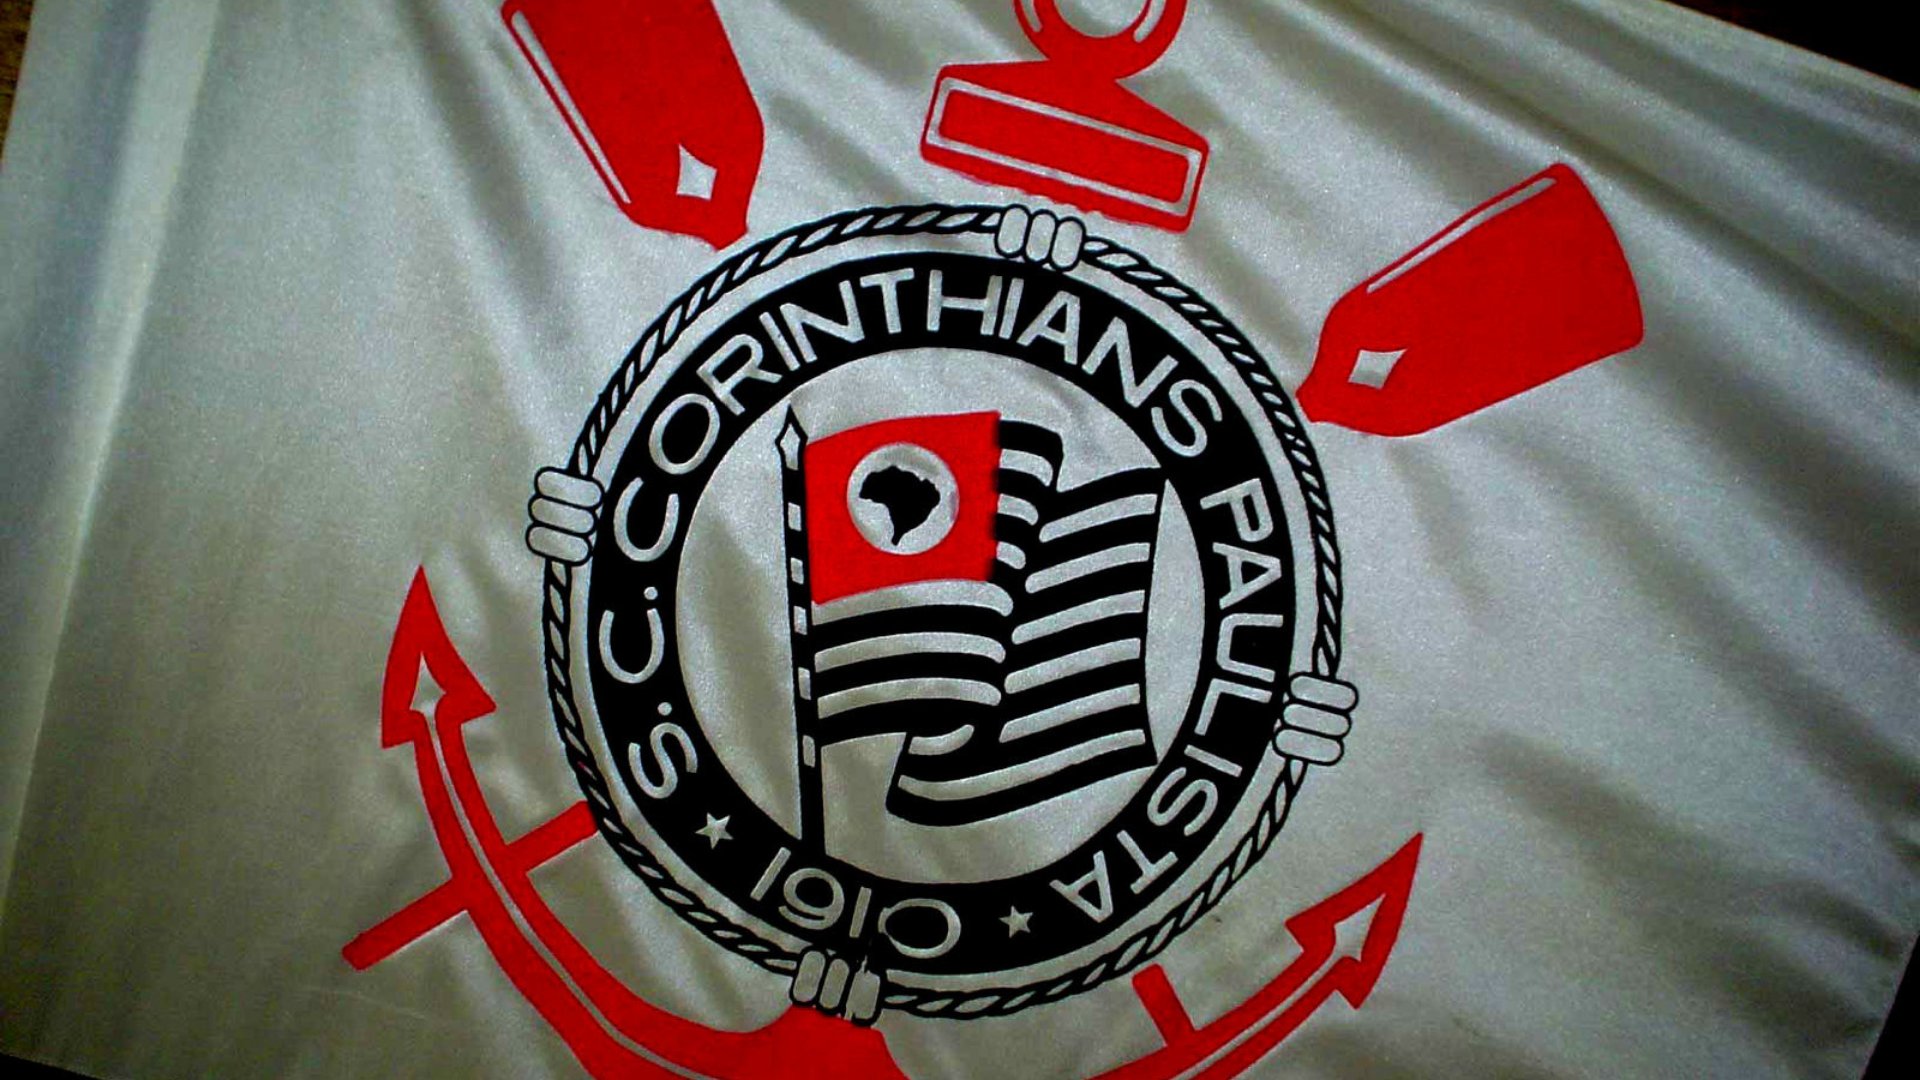 Uma bandeira com o emblema do Corinthians, time de futebol brasileiro.